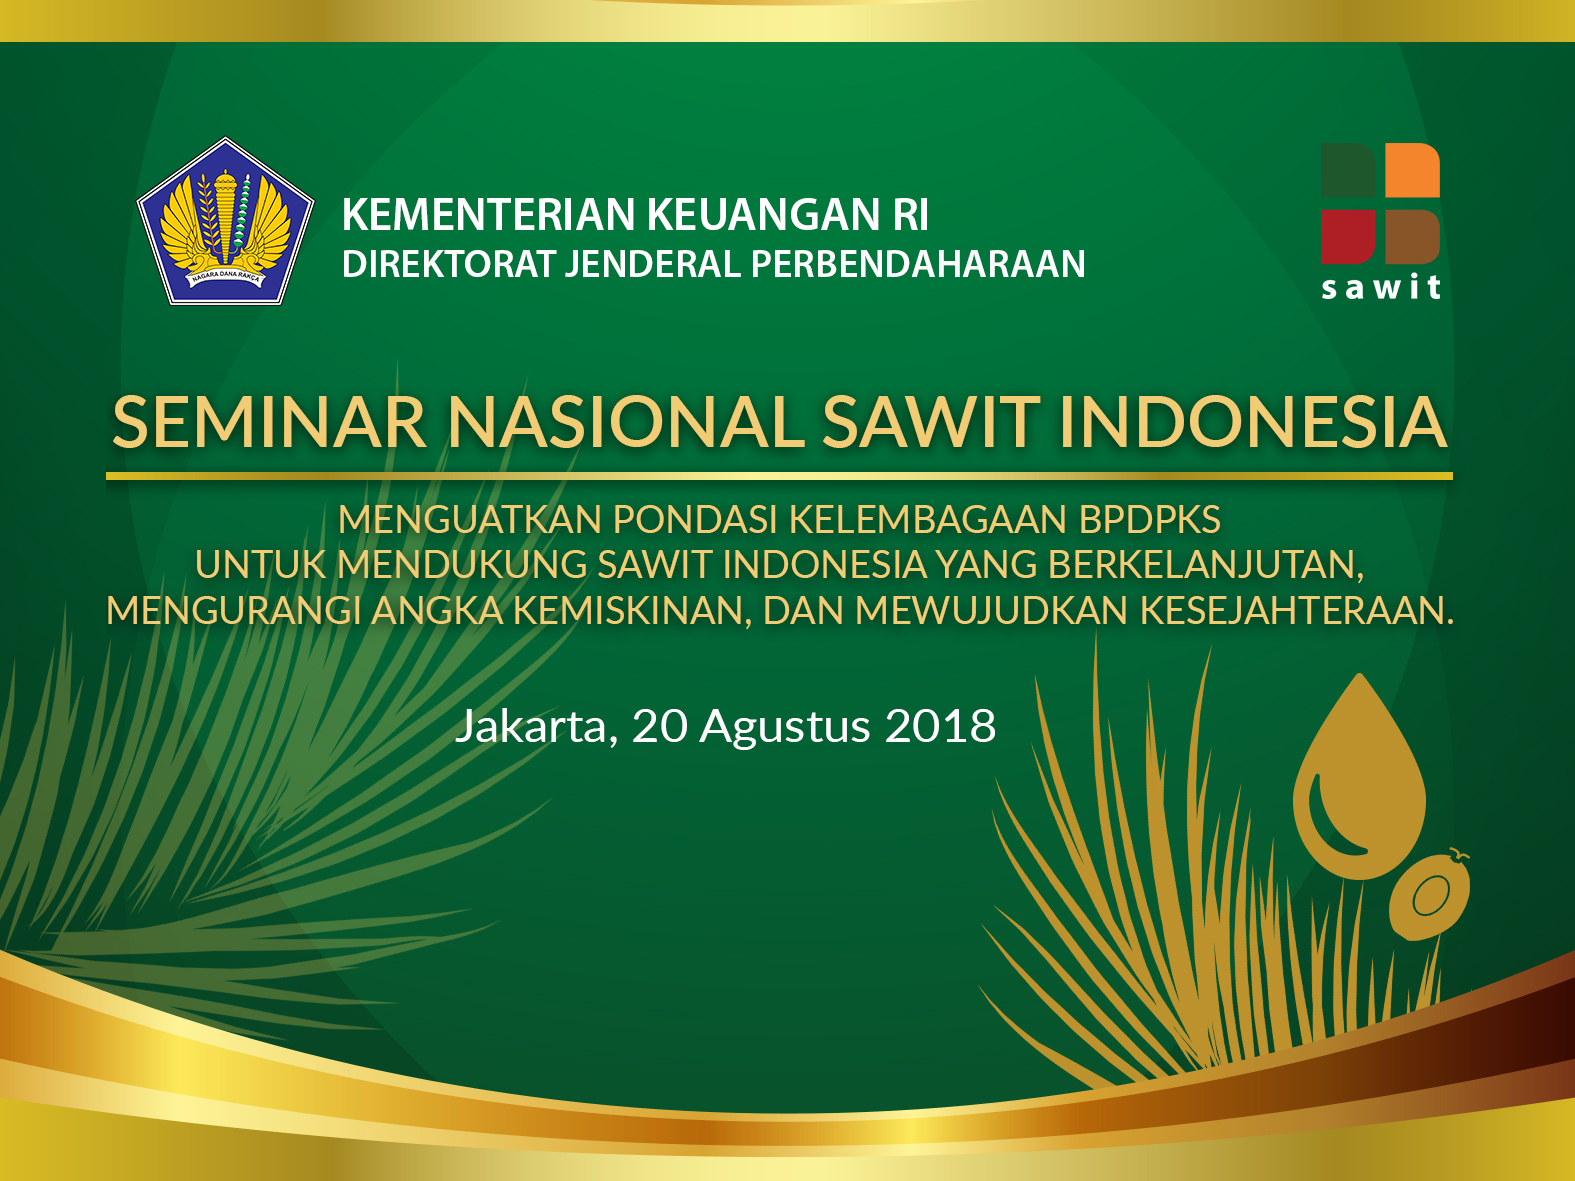 Materi Seminar Nasional Sawit Indonesia tahun 2018